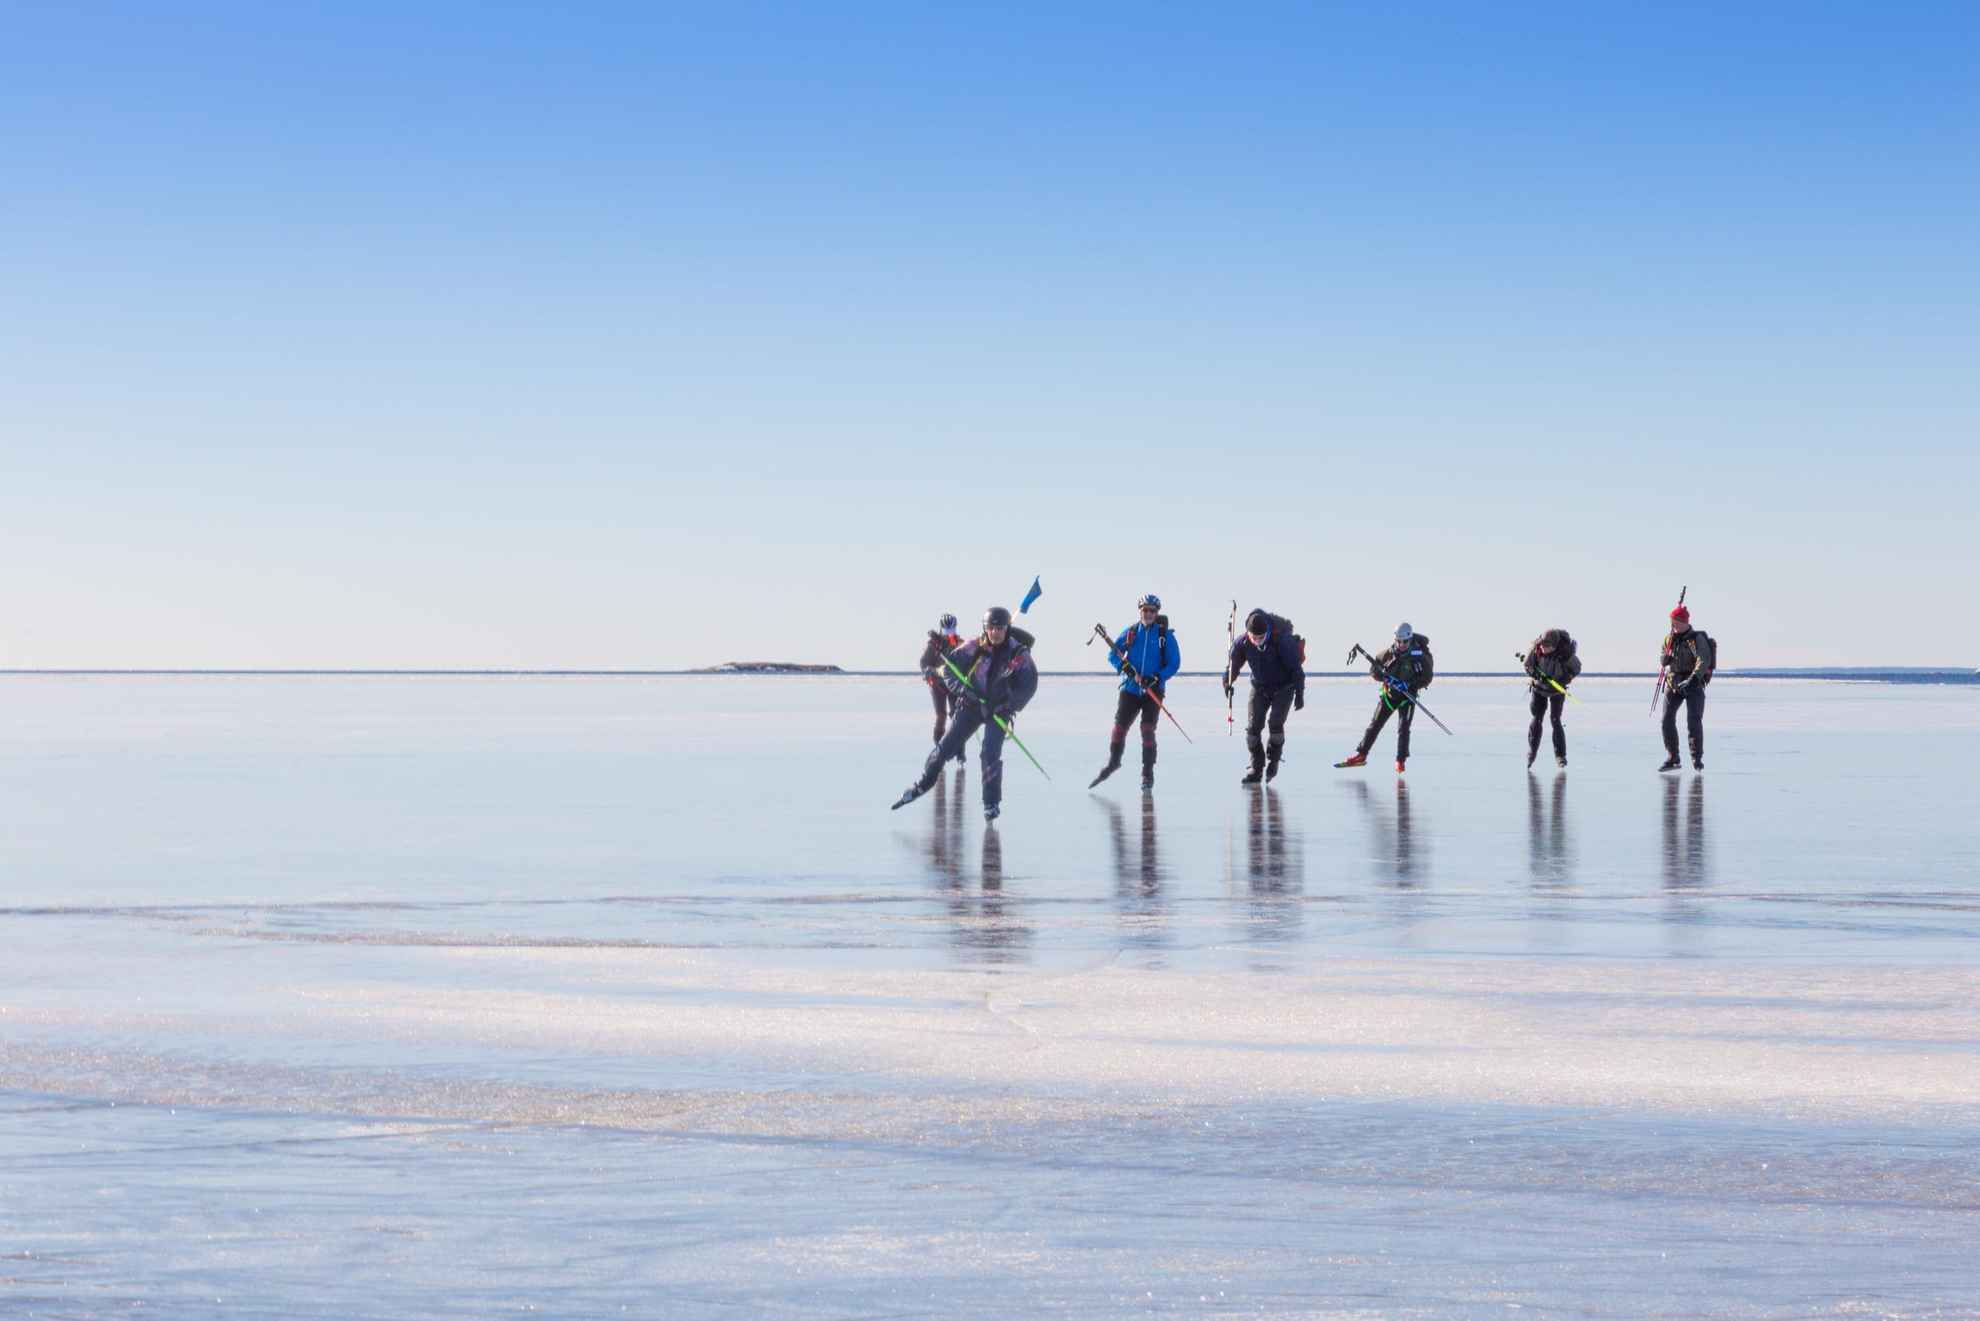 Zeven mensen schaatsen lange afstand op helder ijs op een zonnige winterdag.